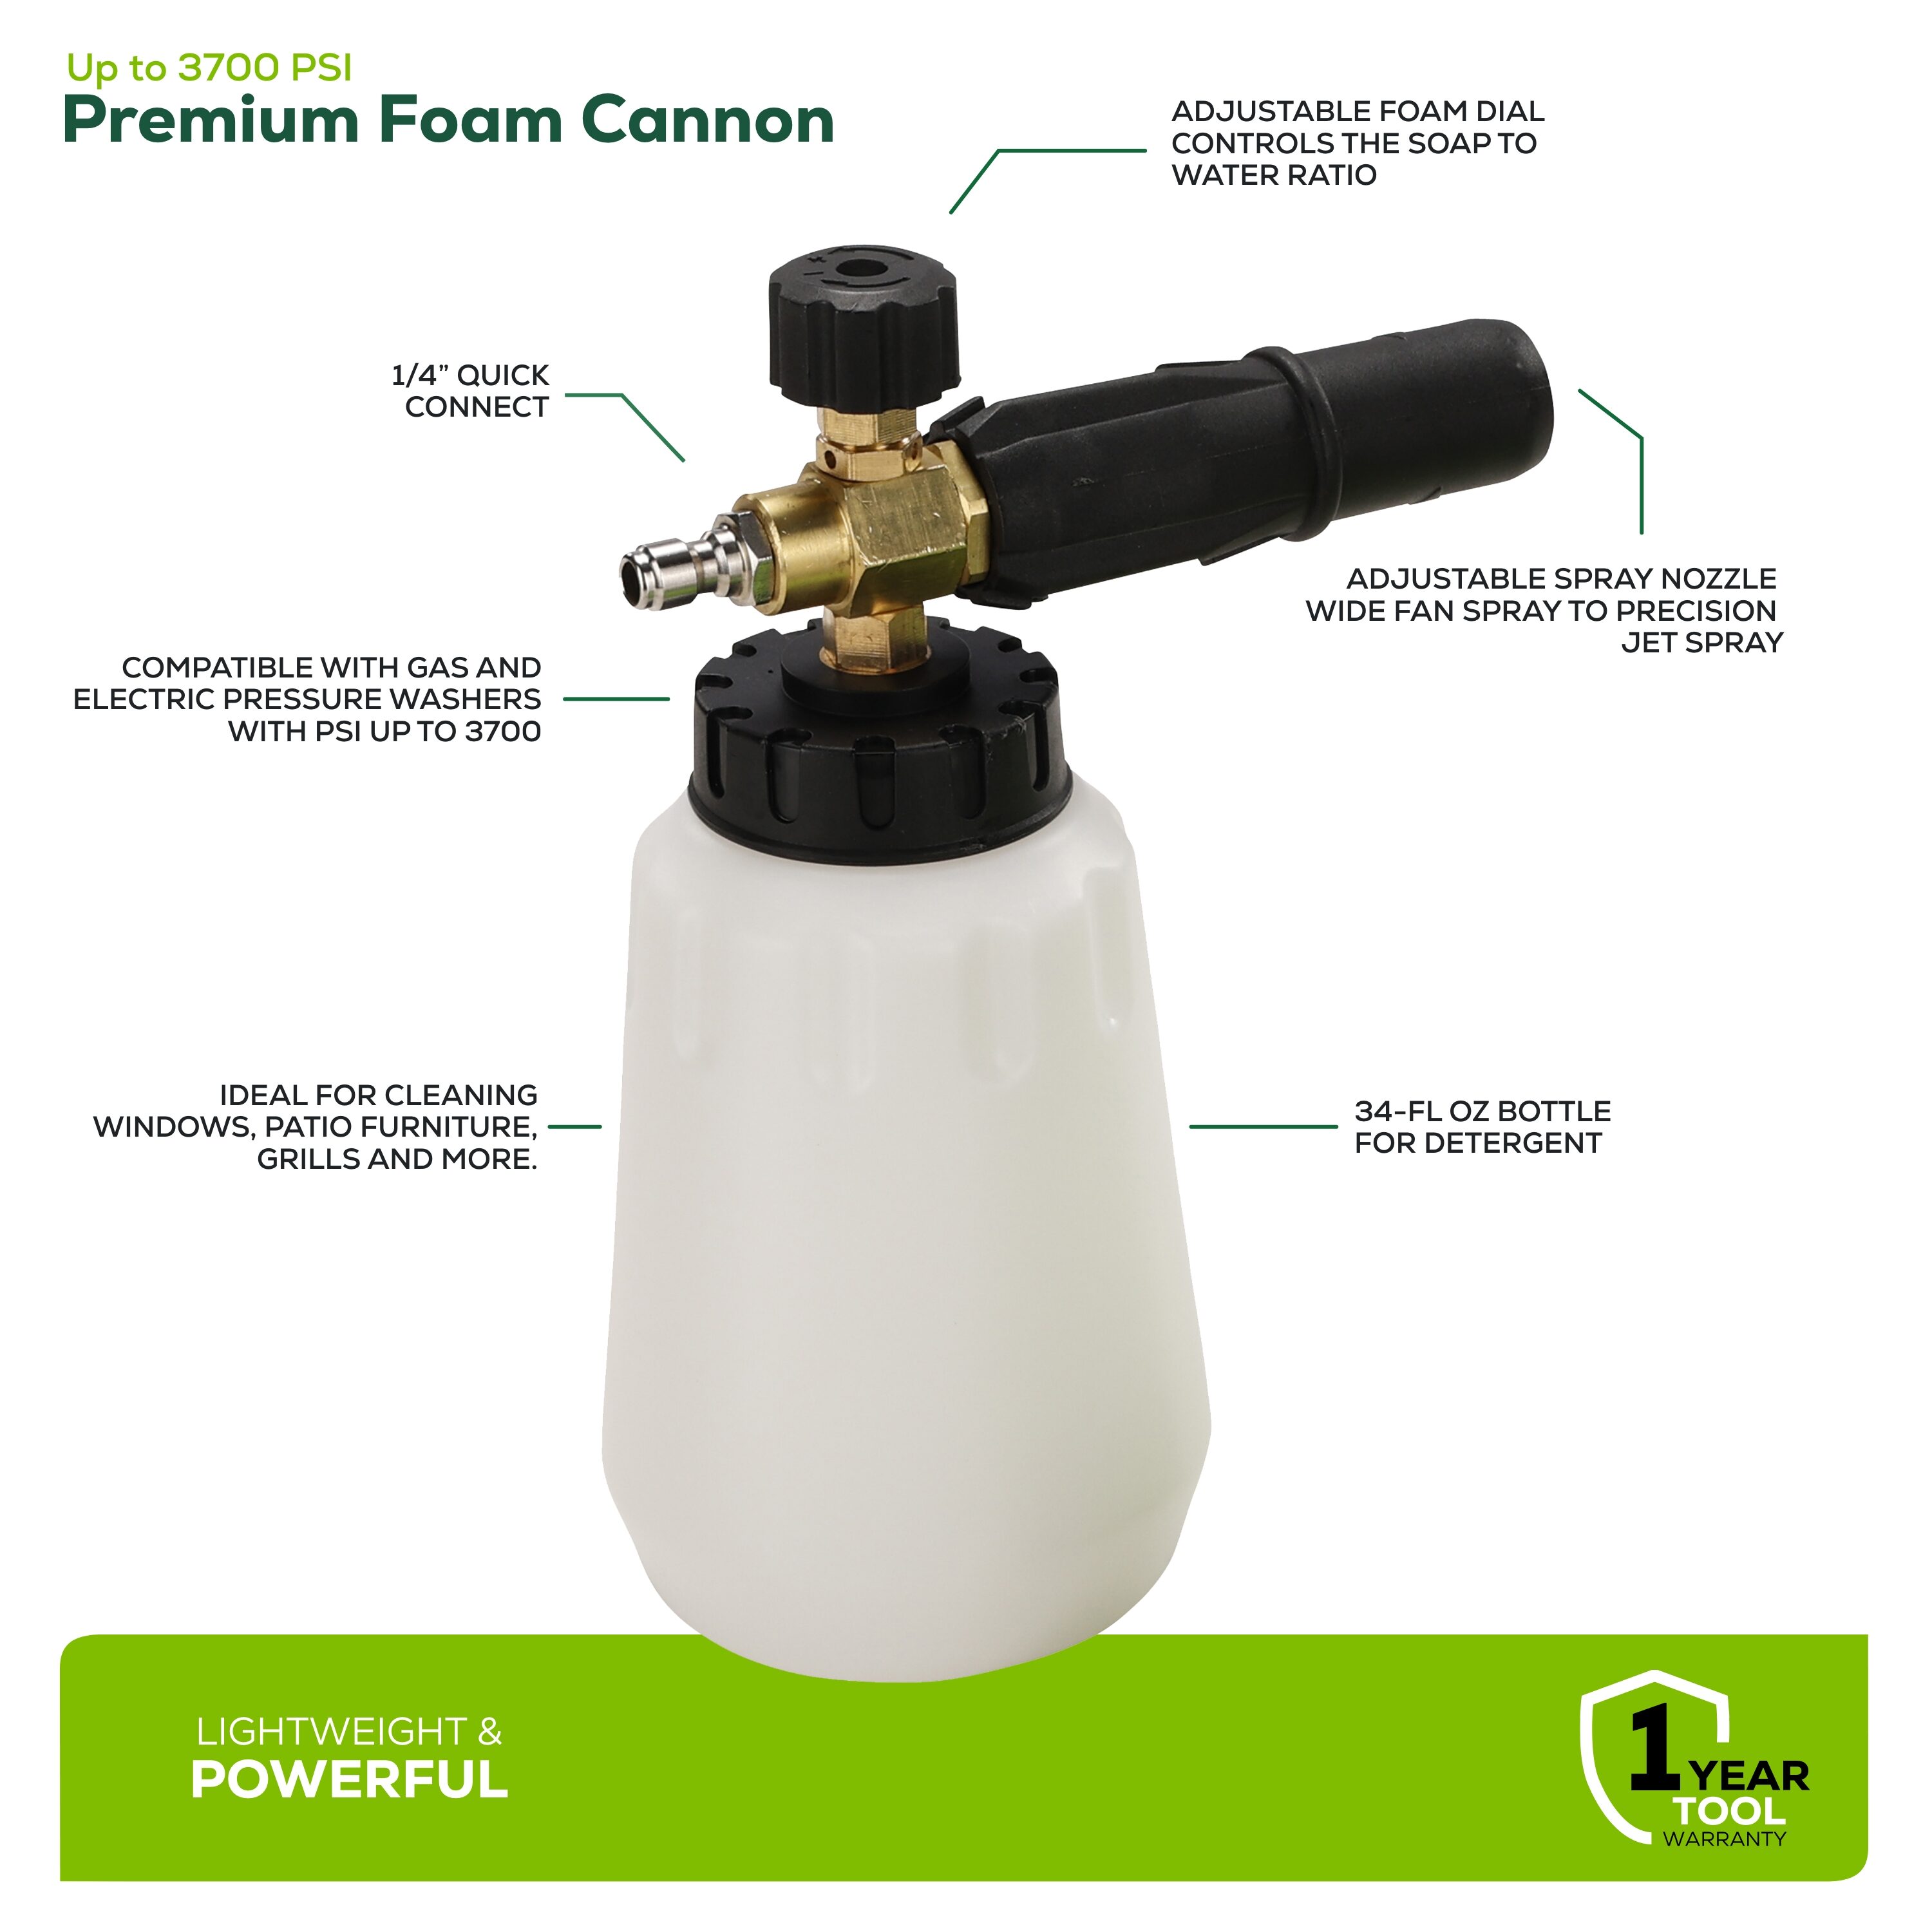 Ethos Foam Cannon - Best Foam Cannon for Pressure Washer, Foam Cannon